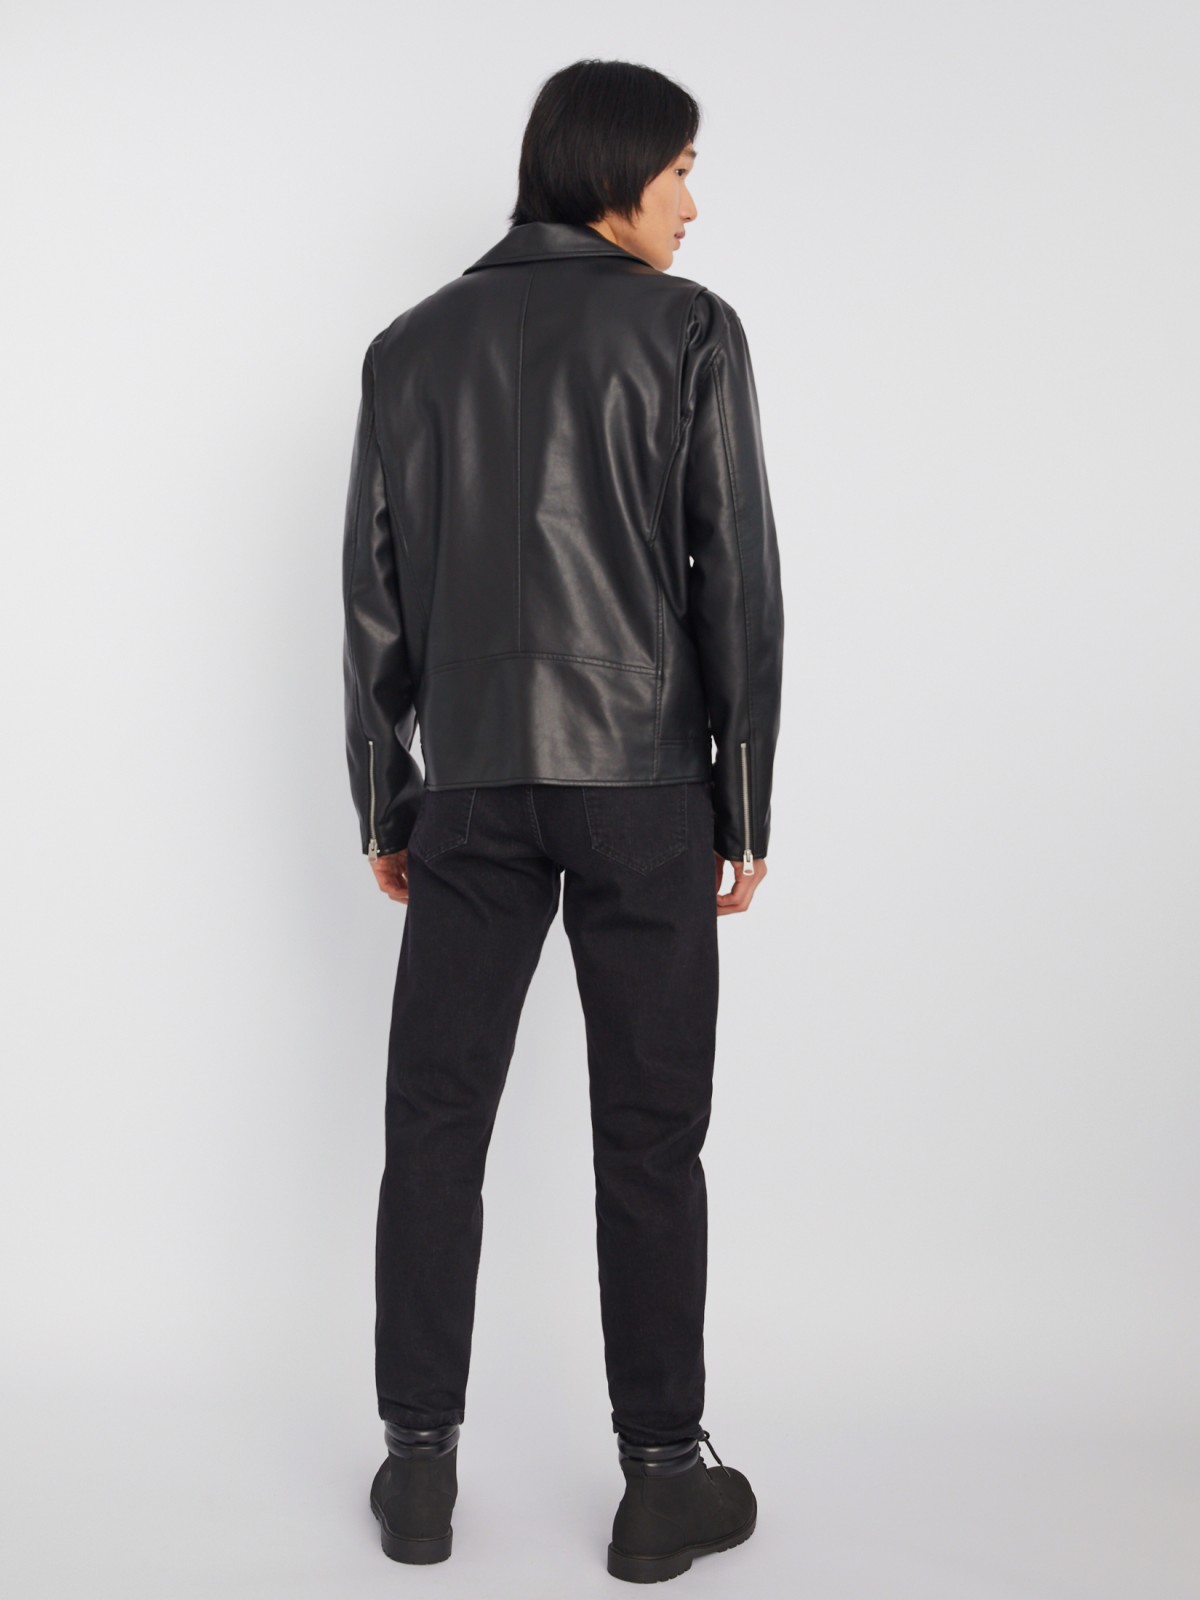 Кожаная куртка-косуха из экокожи без утеплителя zolla 013325650034, цвет черный, размер S - фото 6